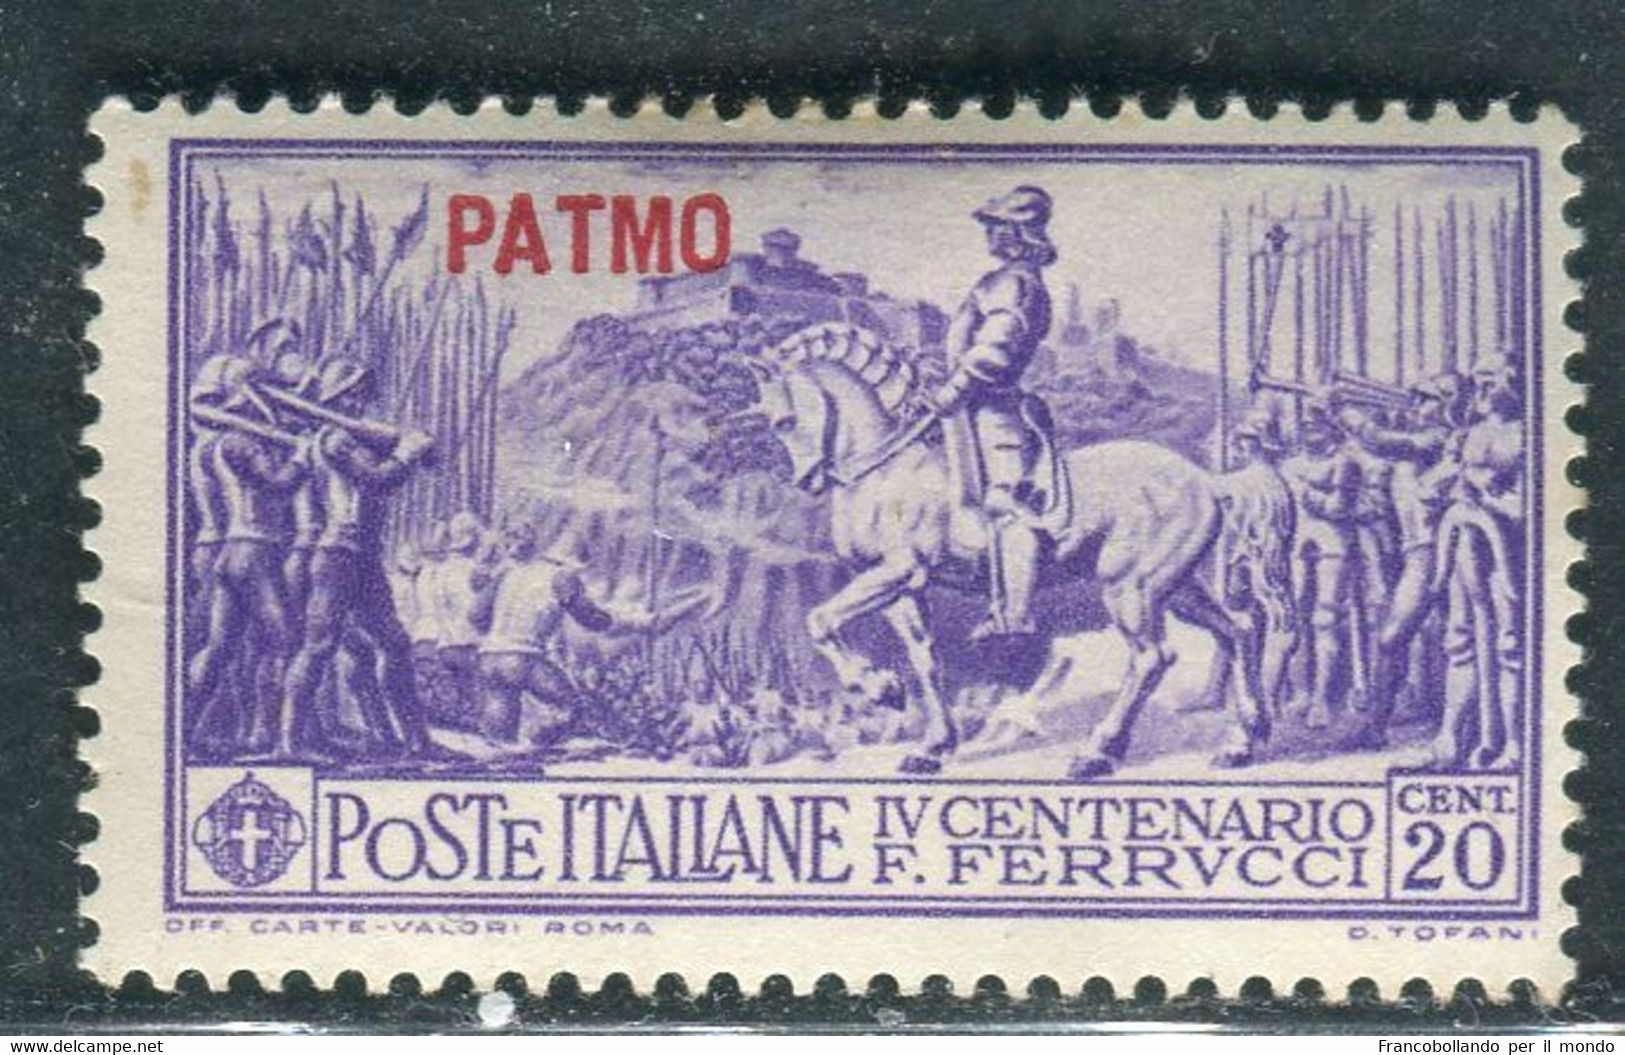 1930 Egeo Isole Patmo 20 Cent Serie Ferrucci MH Sassone 12 - Egeo (Patmo)